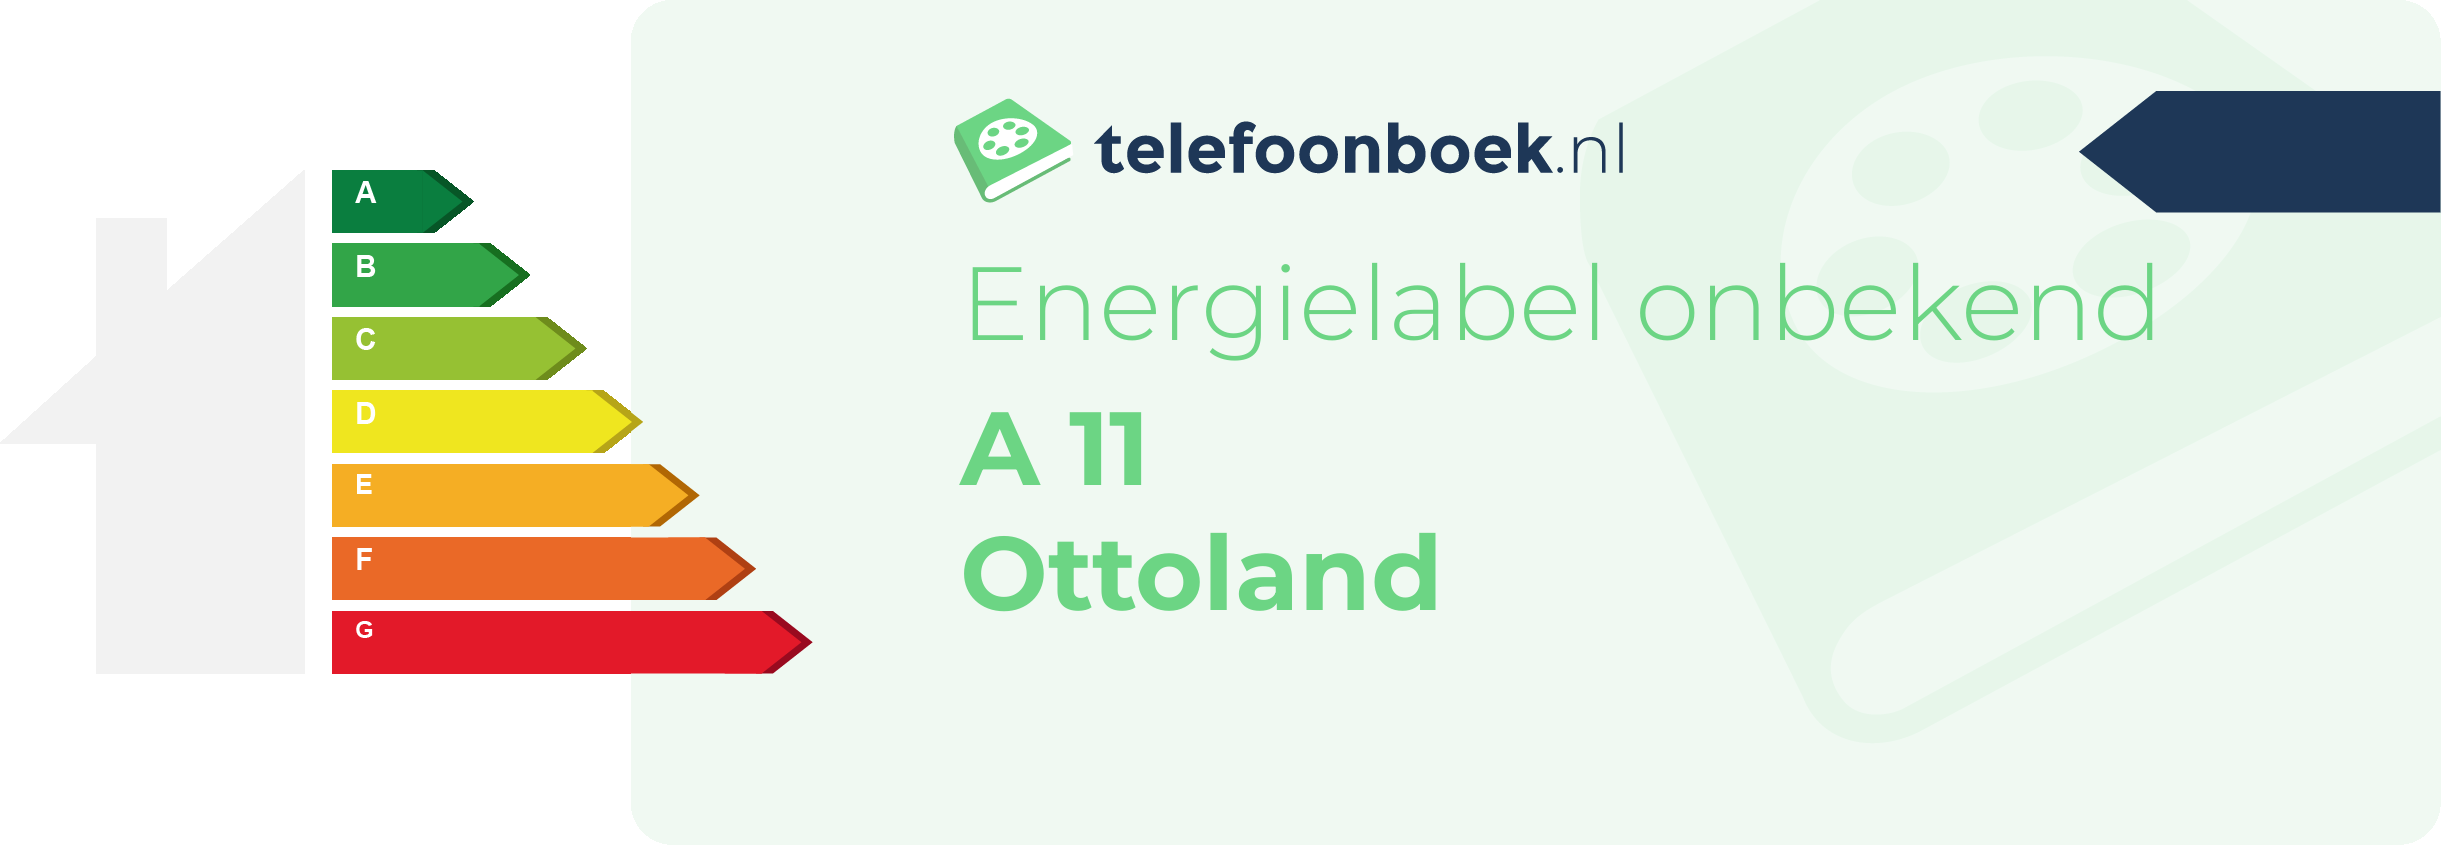 Energielabel A 11 Ottoland